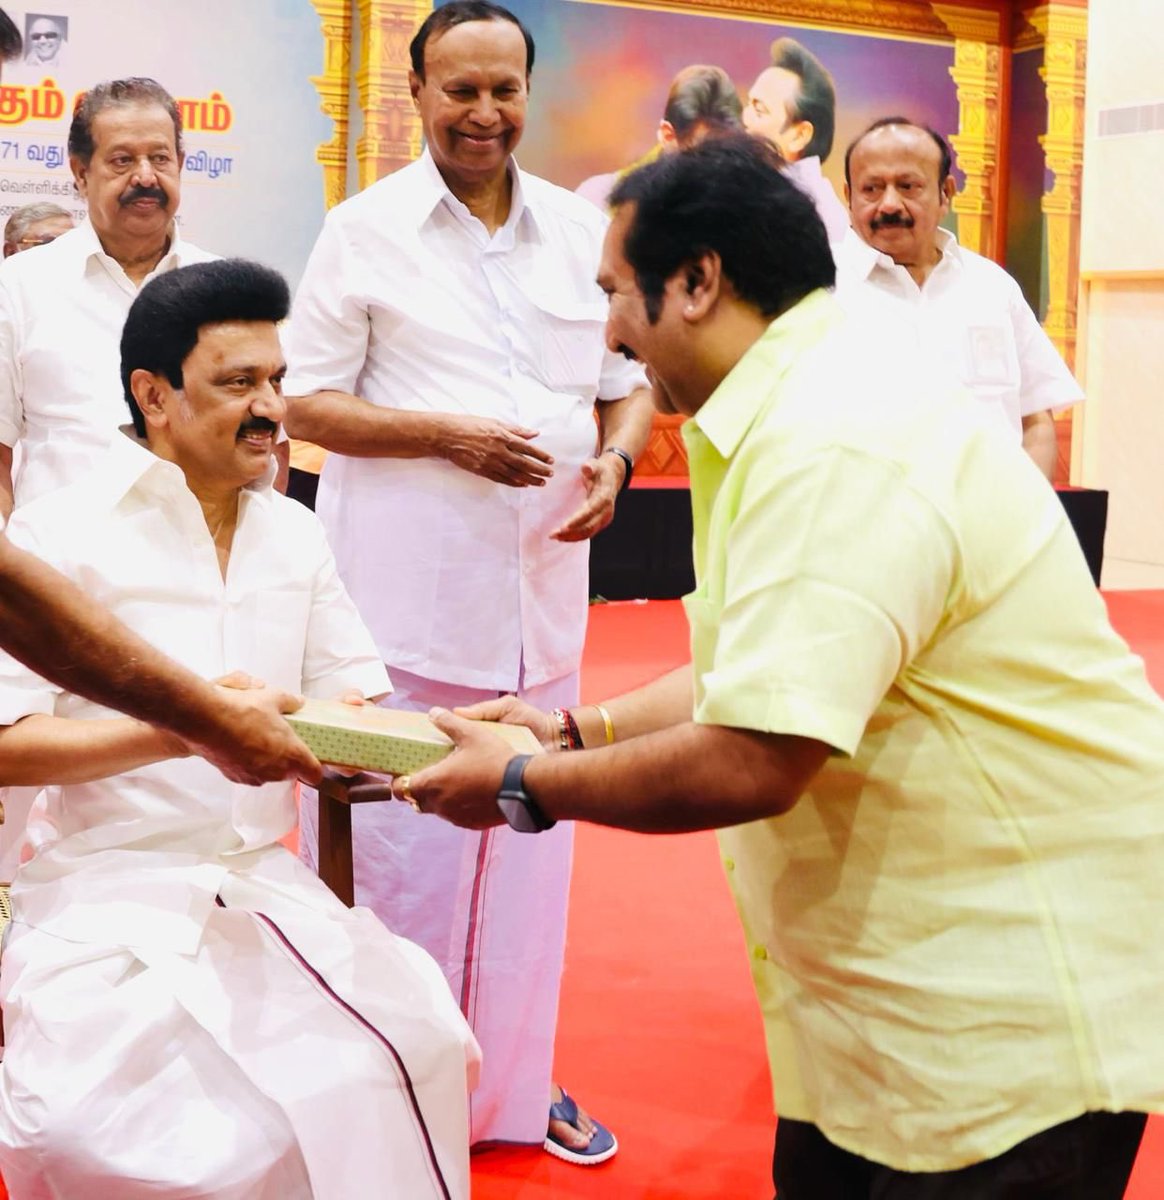 Met the Honourable CM of Tamilnadu @mkstalin gaaru and wished him on his 71st Birthday. Happy Birthday, Sir 💐 #CM #Tamilnadu #TamilnaduCM